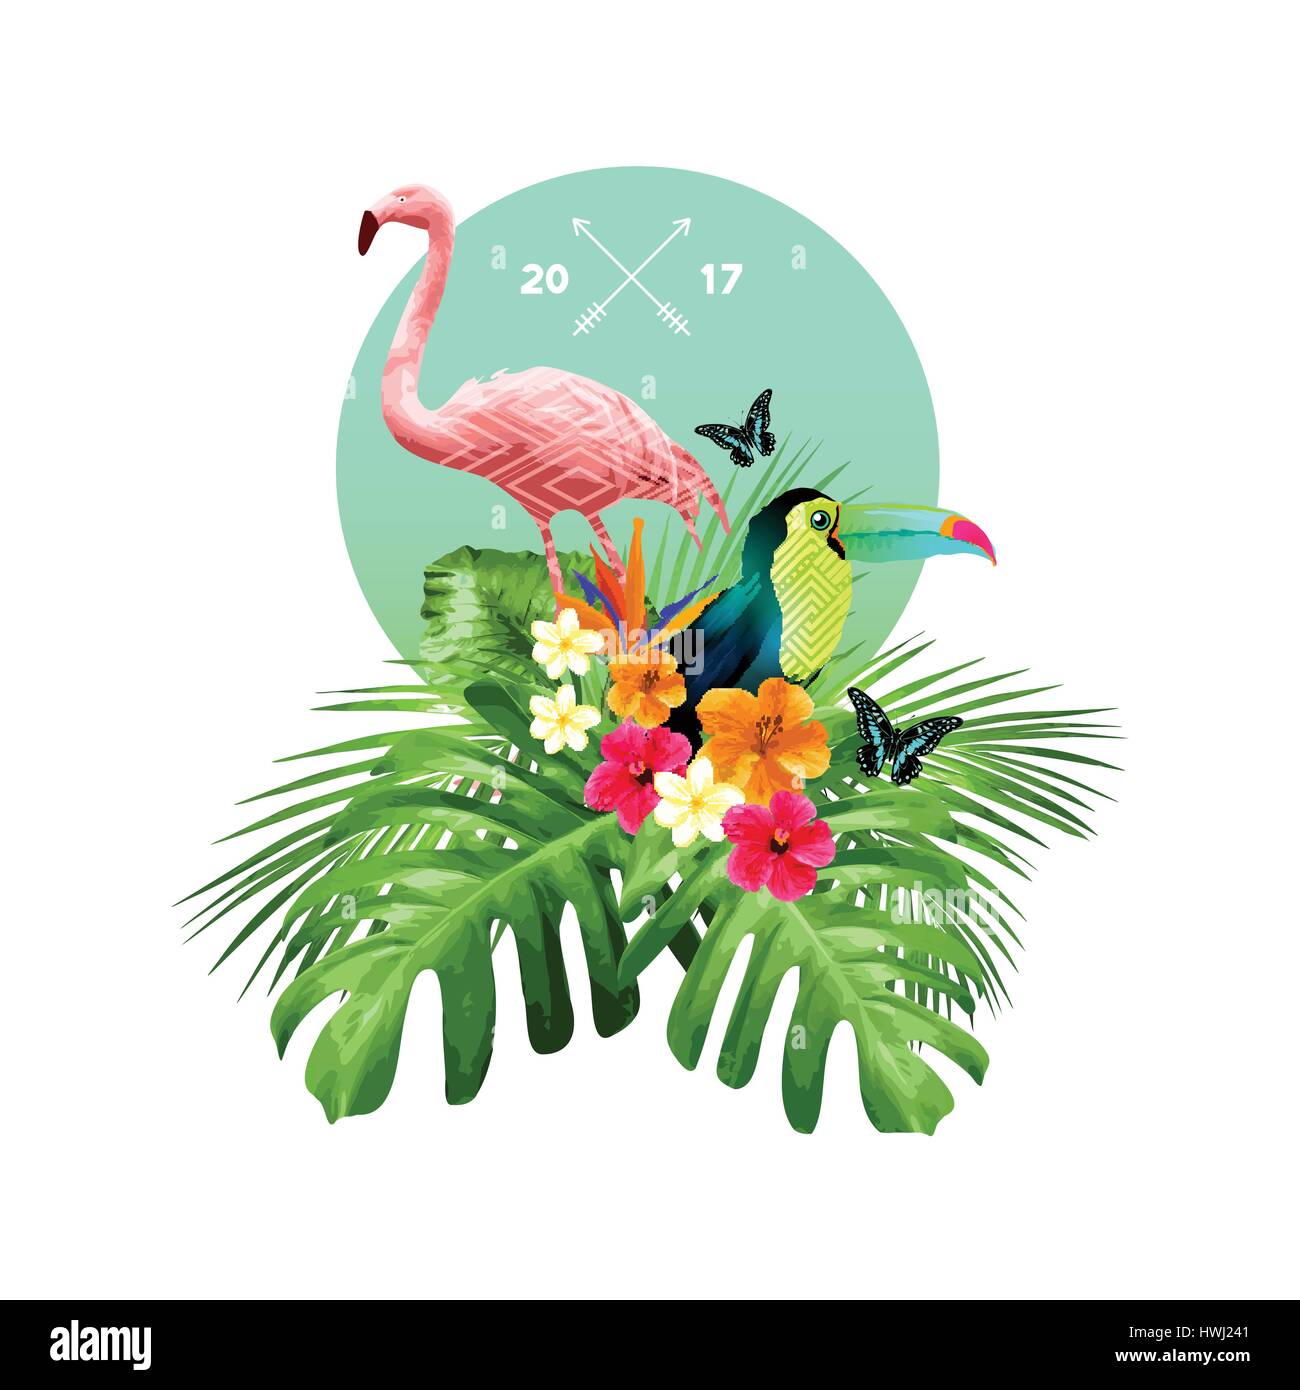 Eine attraktive Anordnung der tropischen florale Elemente, einschließlich Palm Blätter, Vögel und Blumen. Vektor-Illustration. Stock Vektor